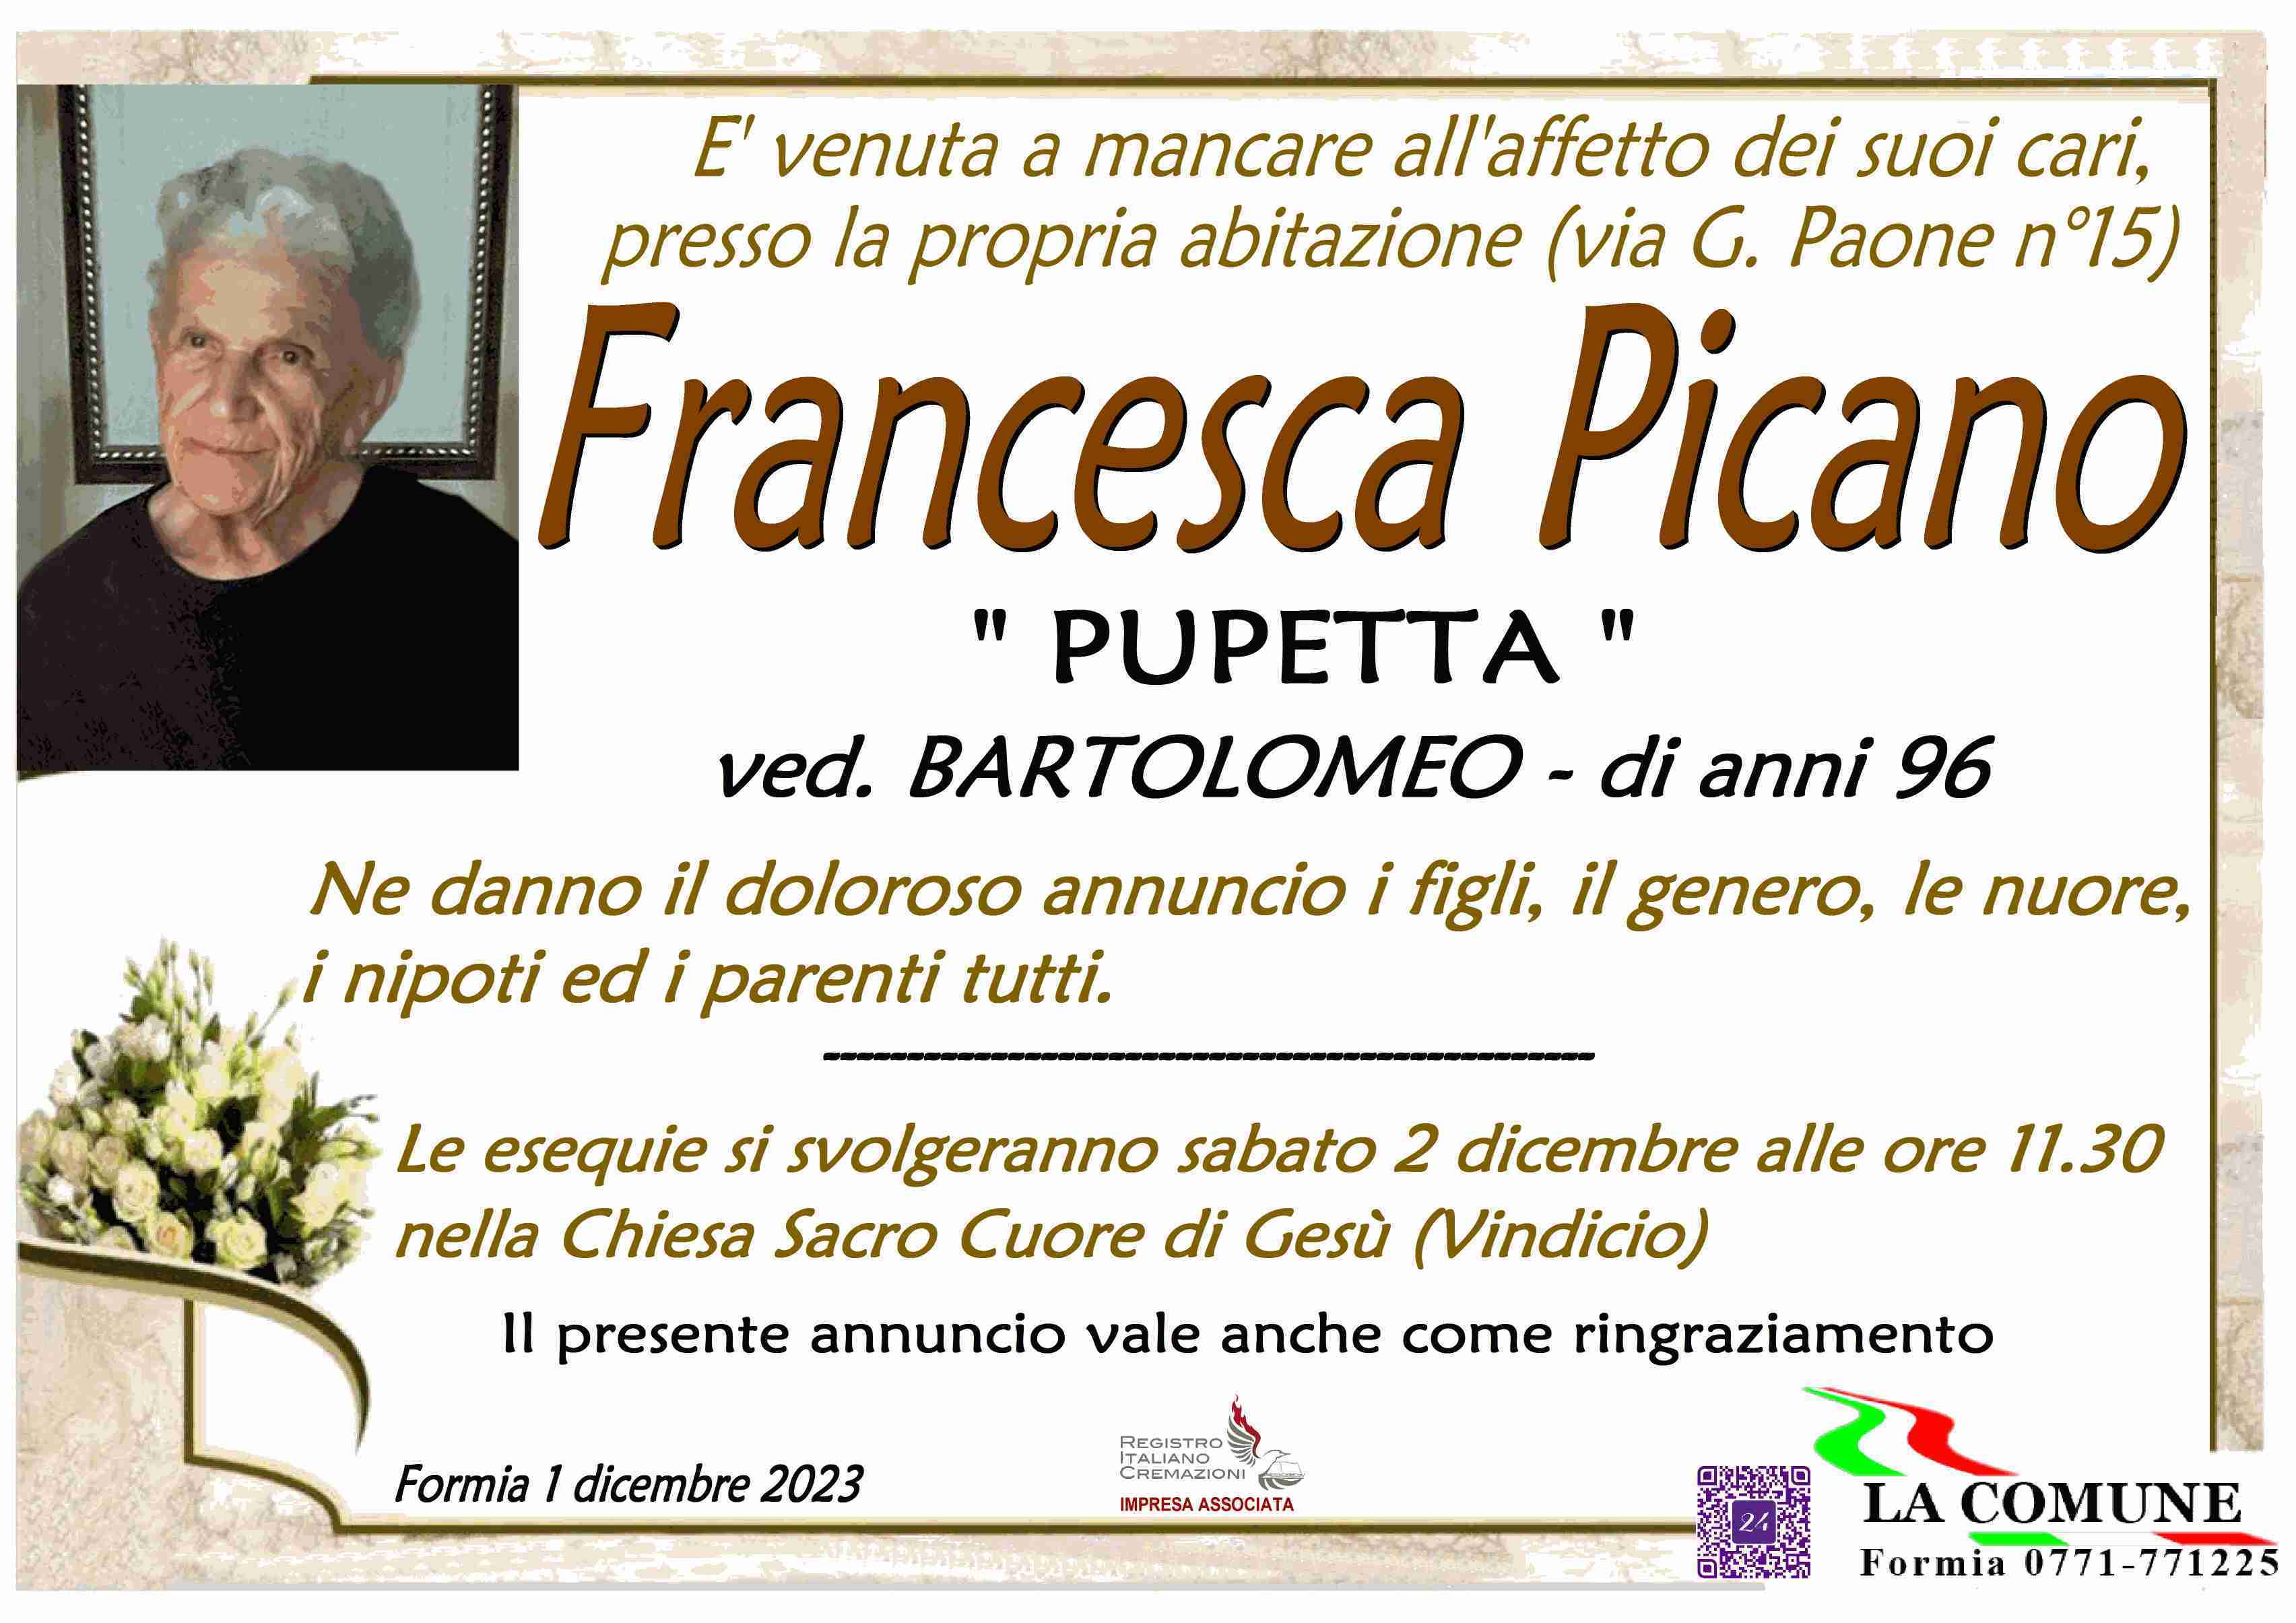 Francesca Picano